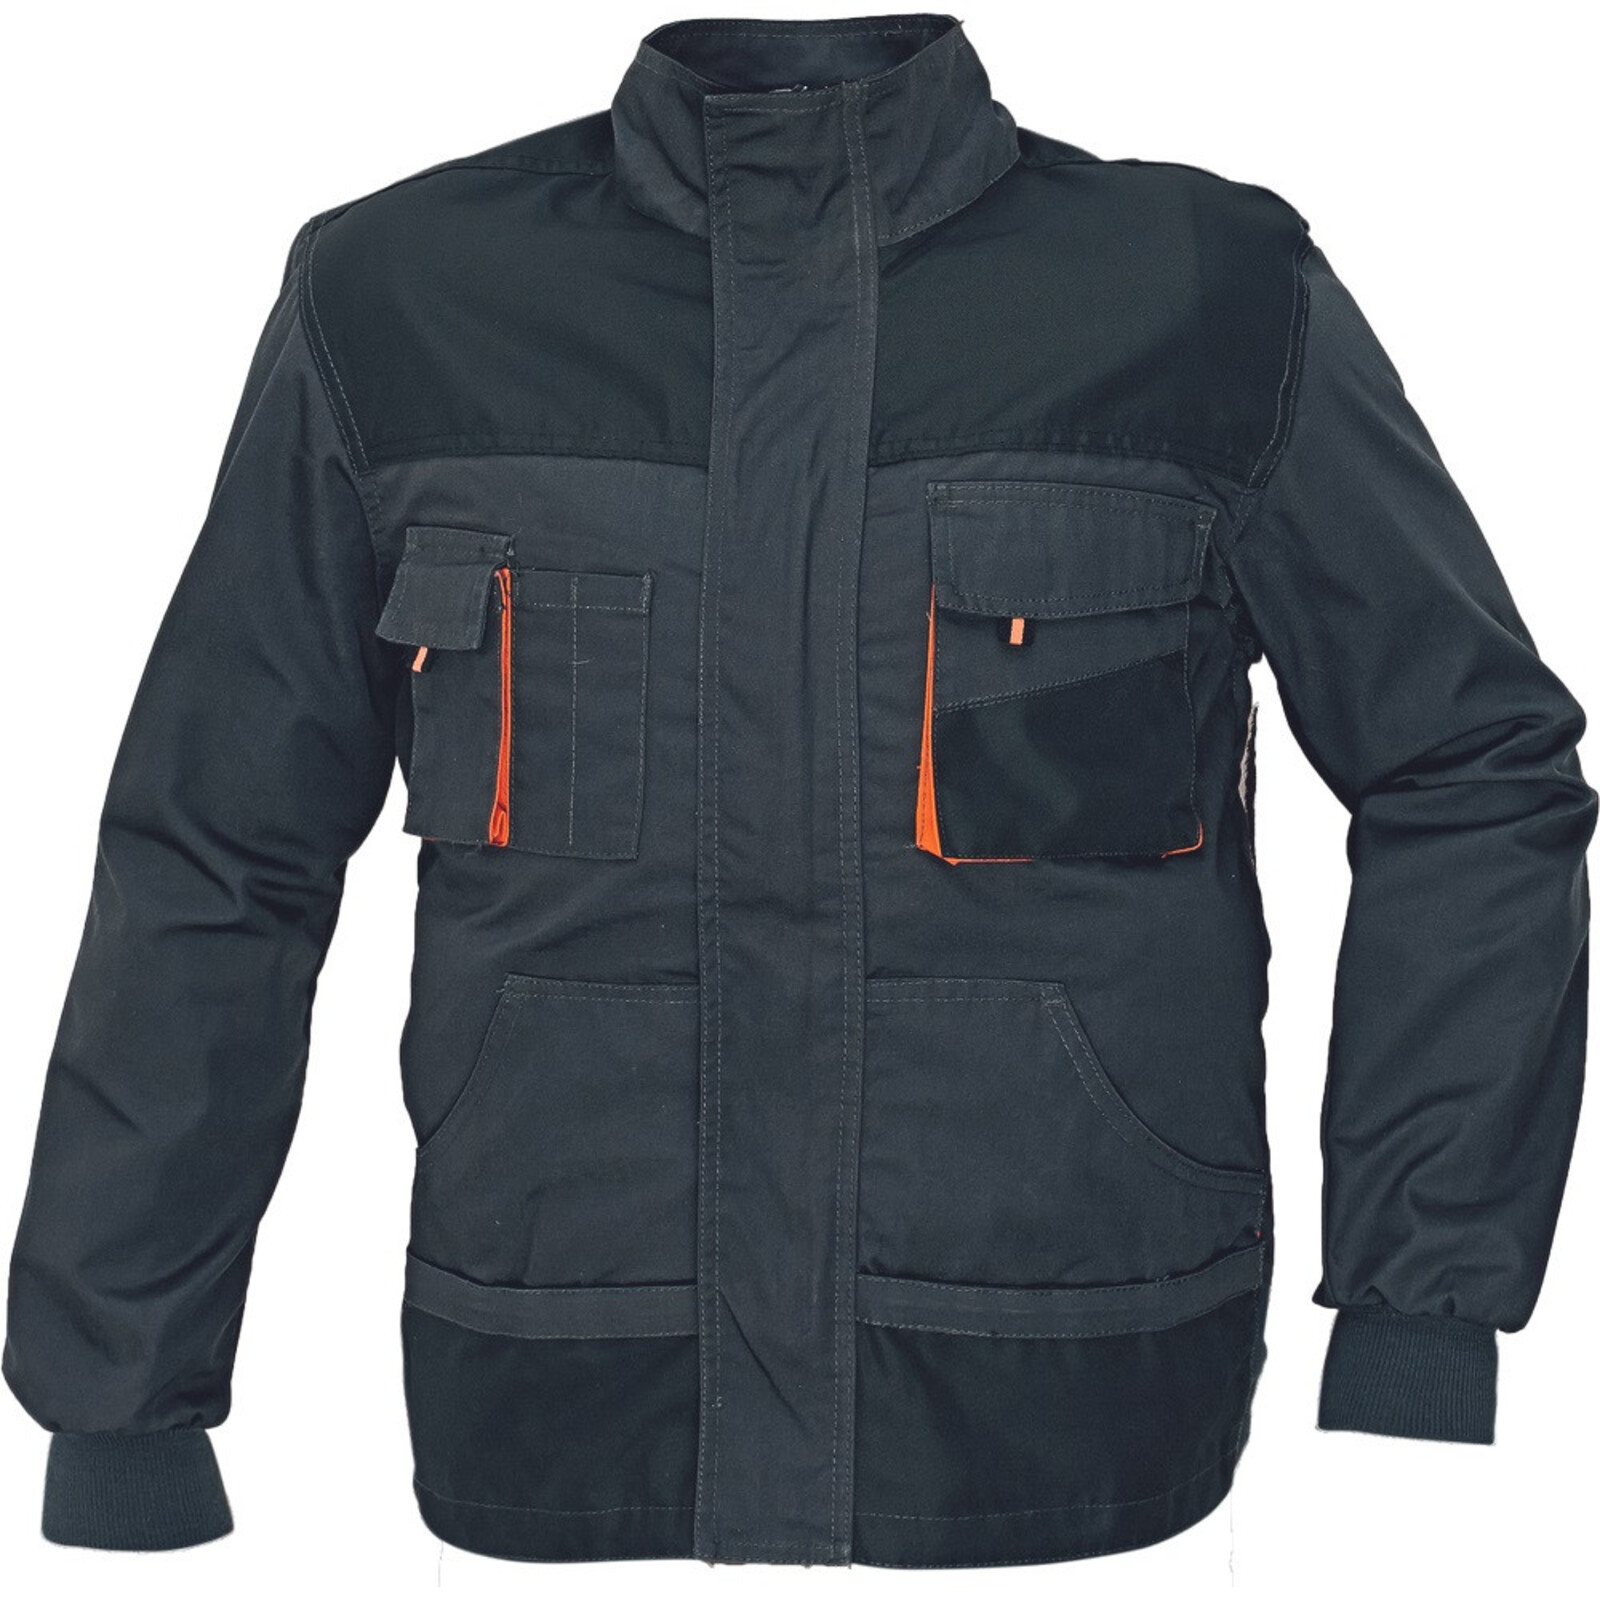 Odolná montérková bunda Emerton pánska - veľkosť: 64, farba: čierna/oranžová